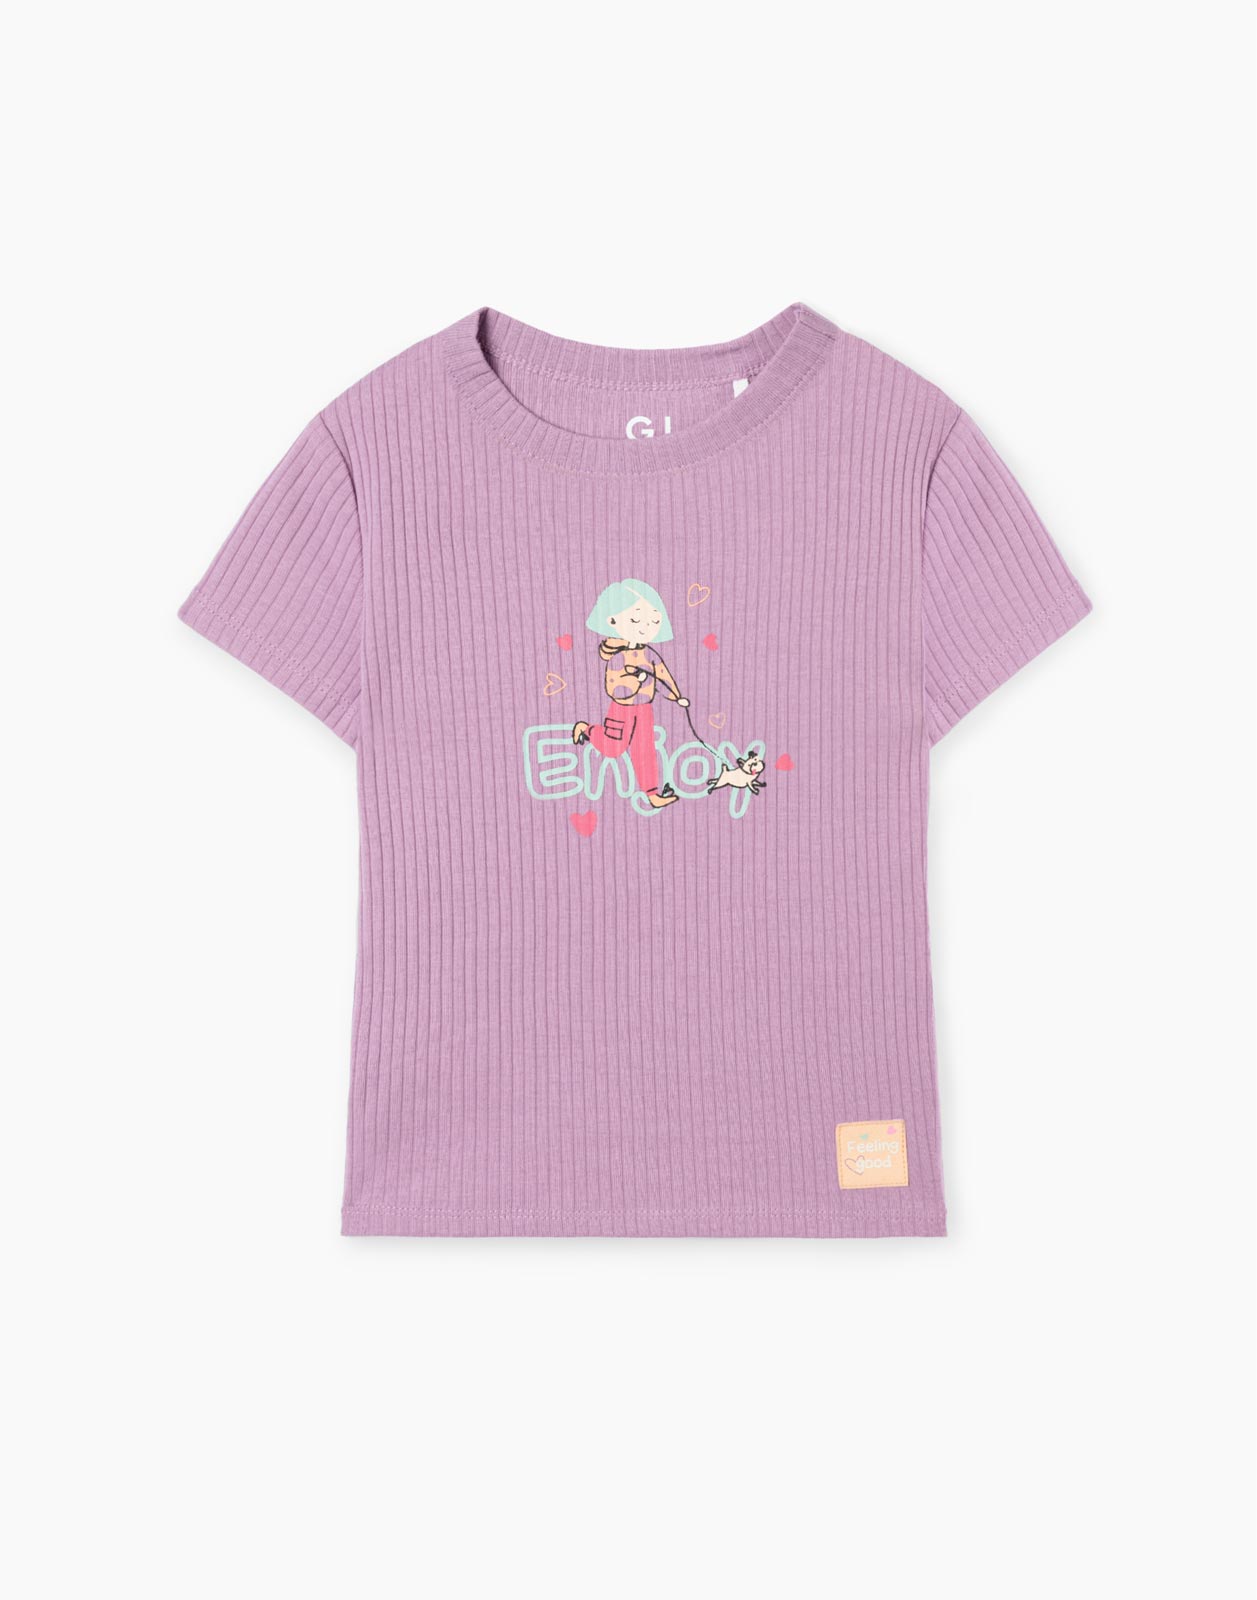 Фиолетовая приталенная футболка в рубчик с принтом для девочки GKT021478 5-6л/116